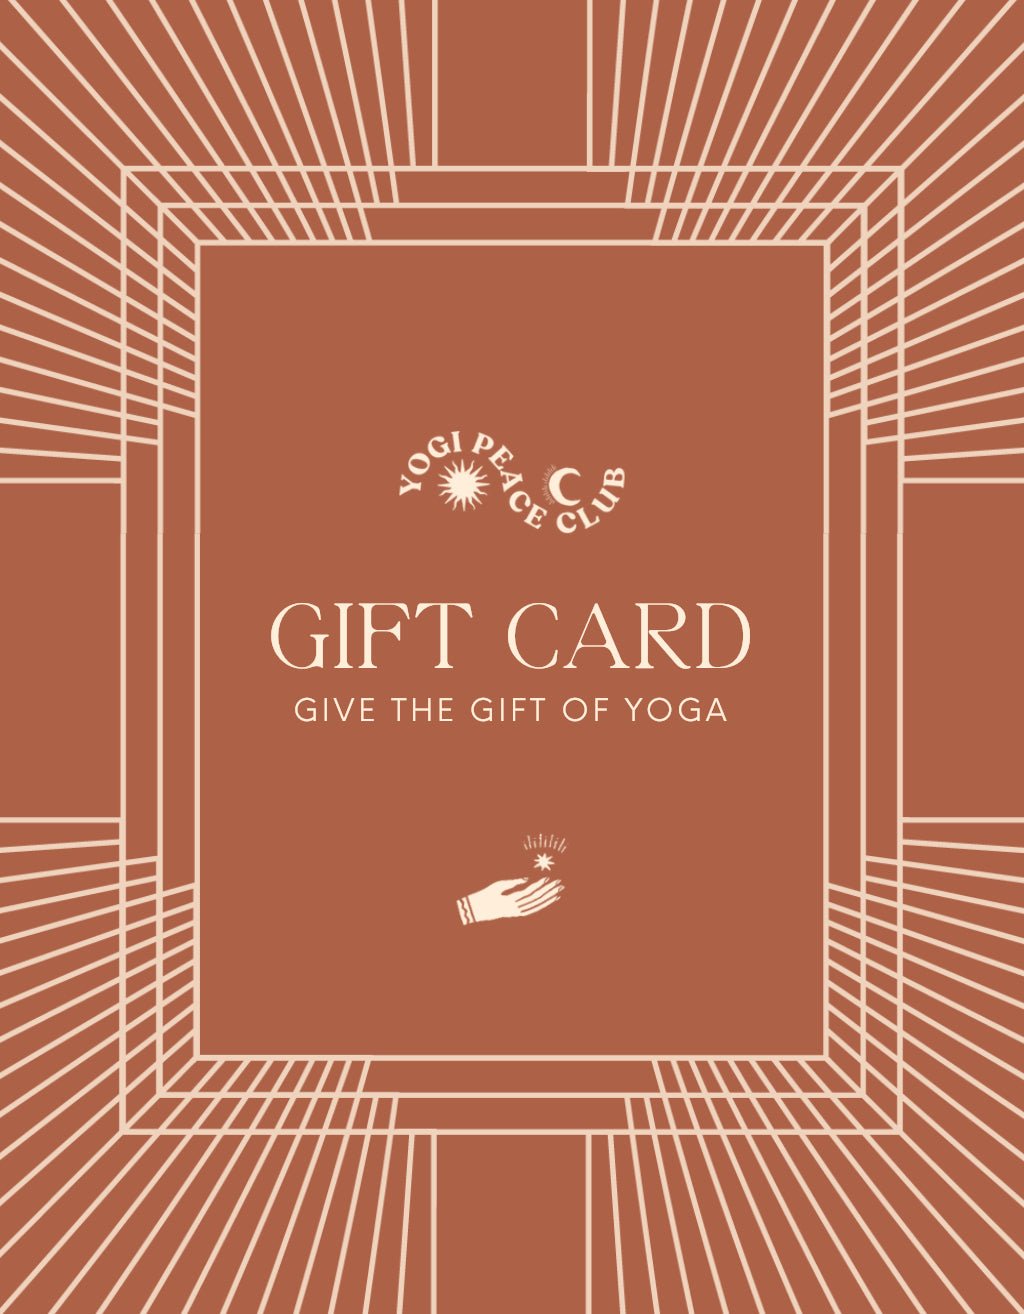 Yogi Peace Club Gift Card - Yogi Peace Club - Gift Card